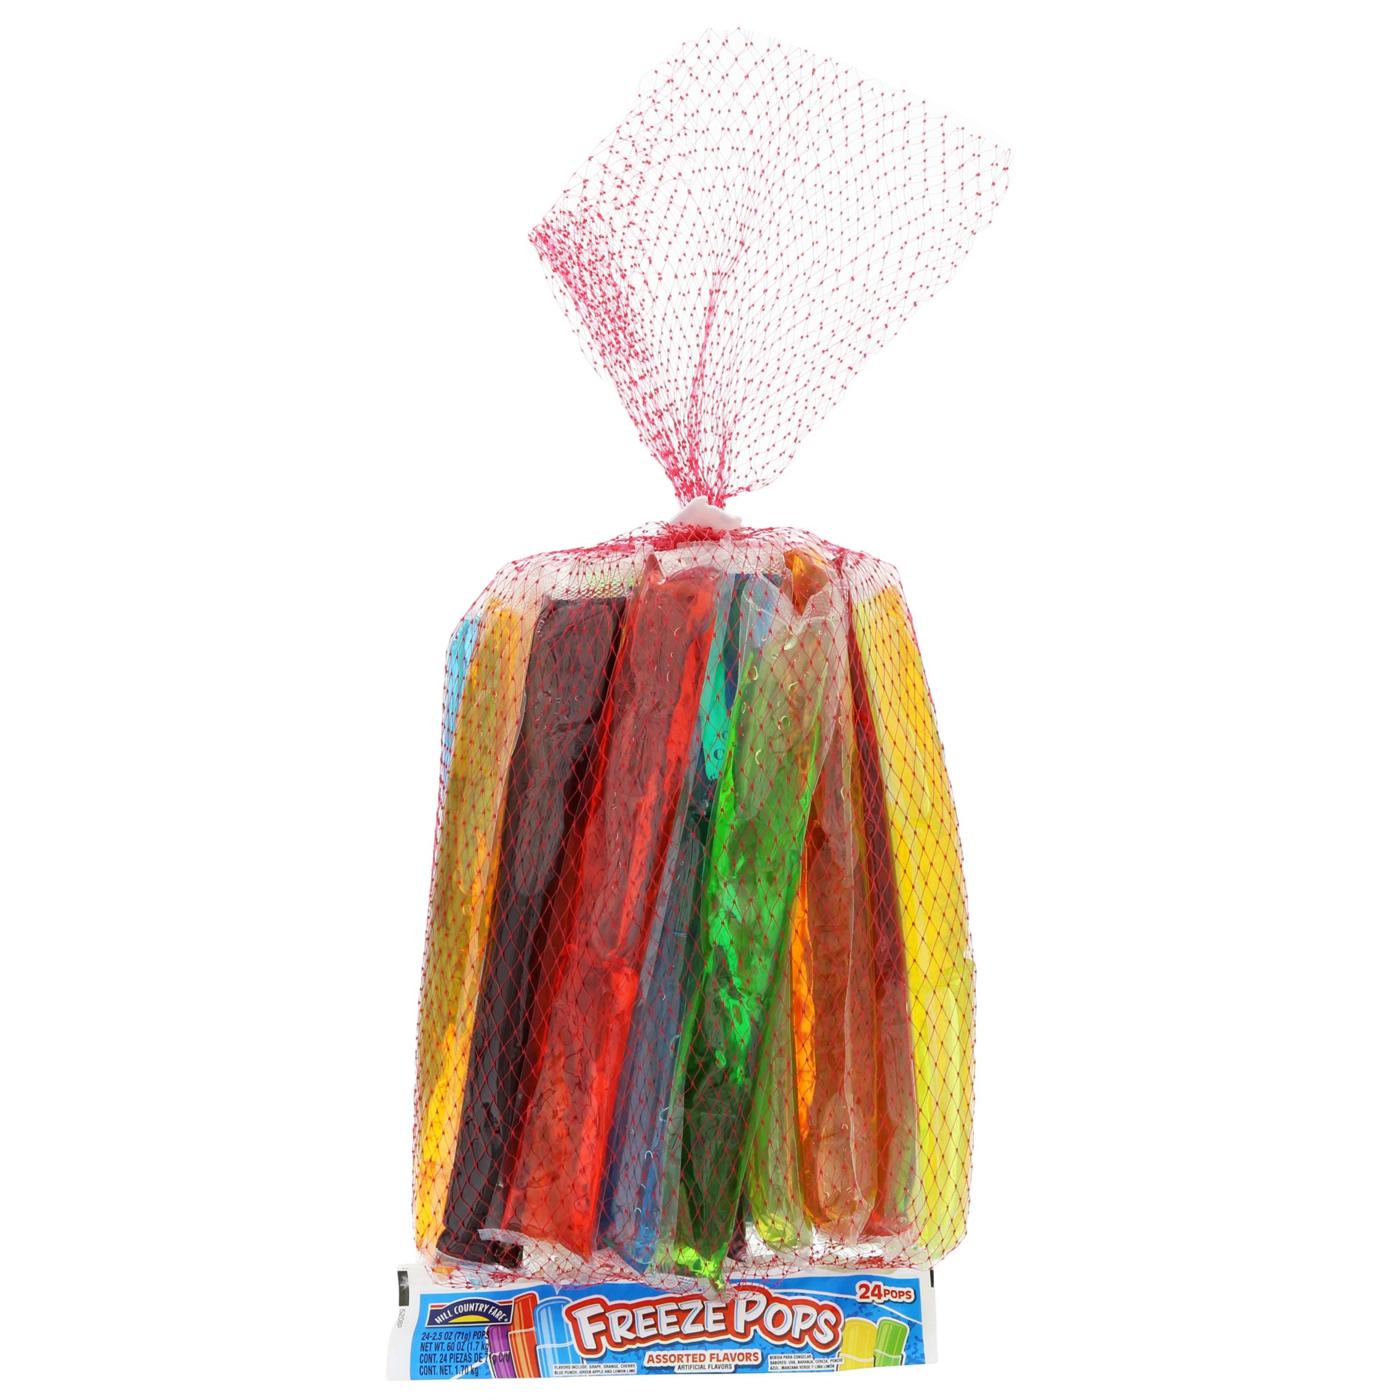 Evriholder Crayola Freez'R Pops Popsicle Maker - Shop Utensils & Gadgets at  H-E-B